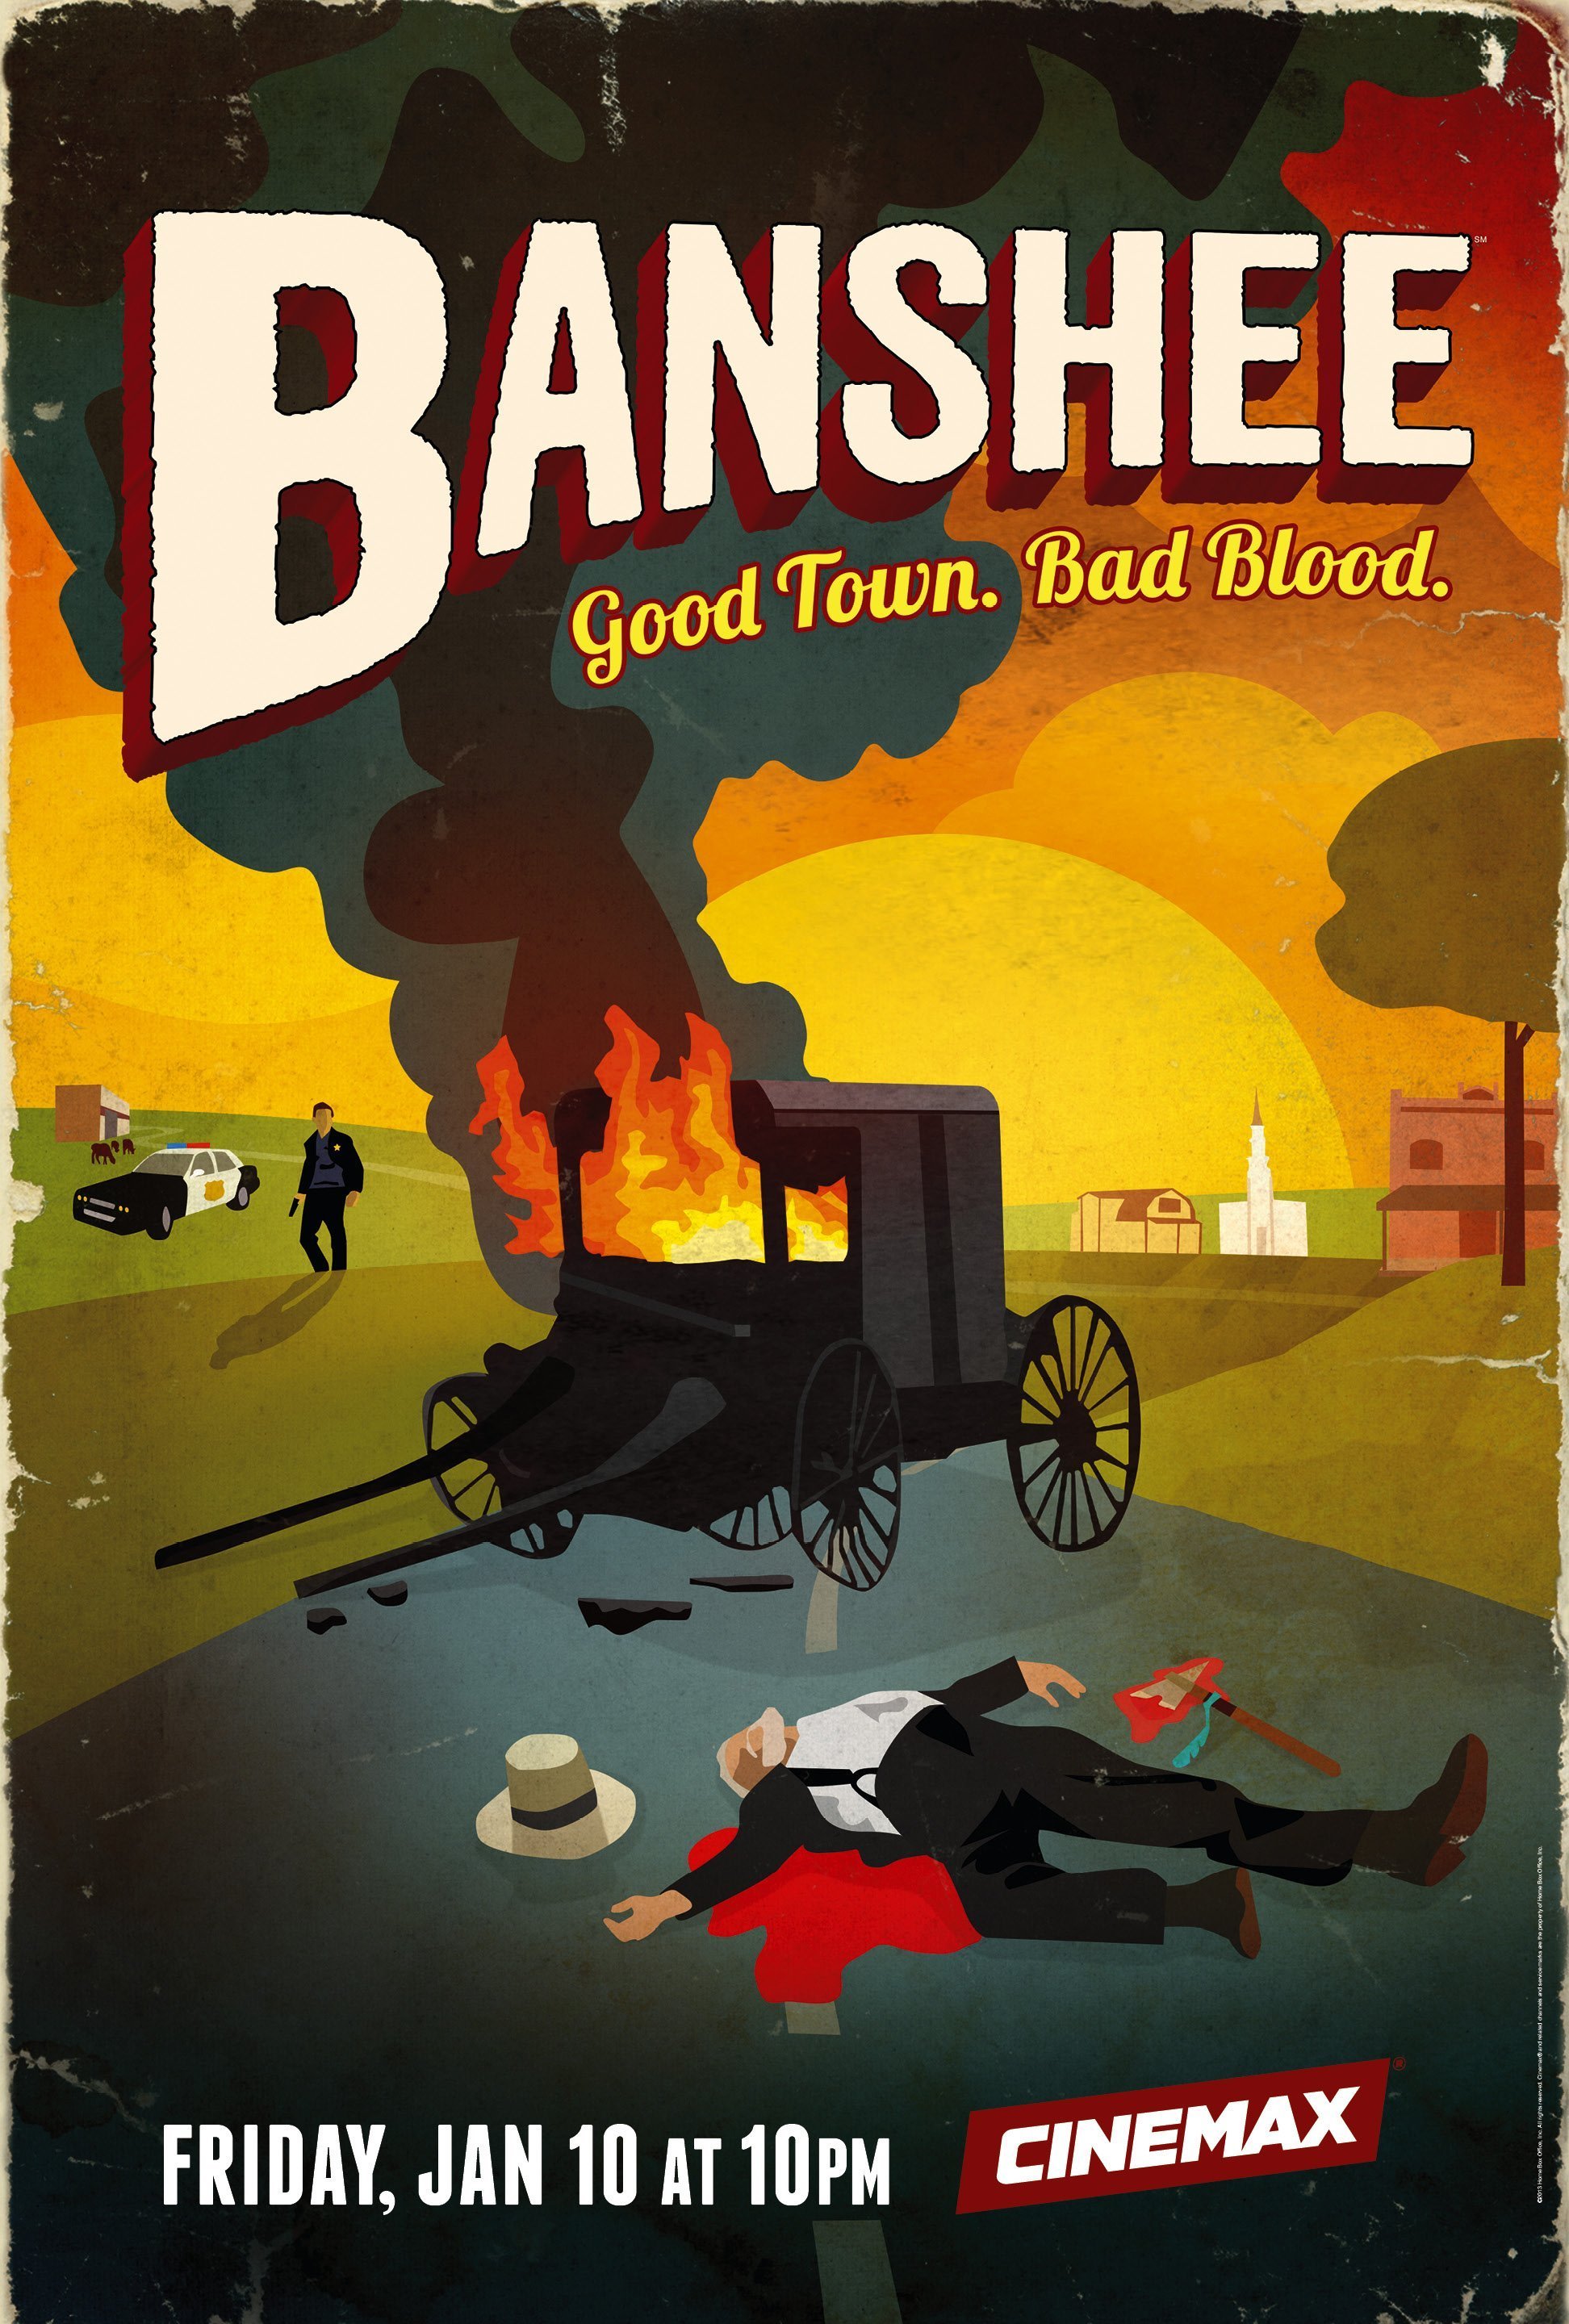 Poster de la saison 2 de la série Banshee créée par David Schickler et Jonathan Tropper avec la tagline "Good Town. Bad Blood."